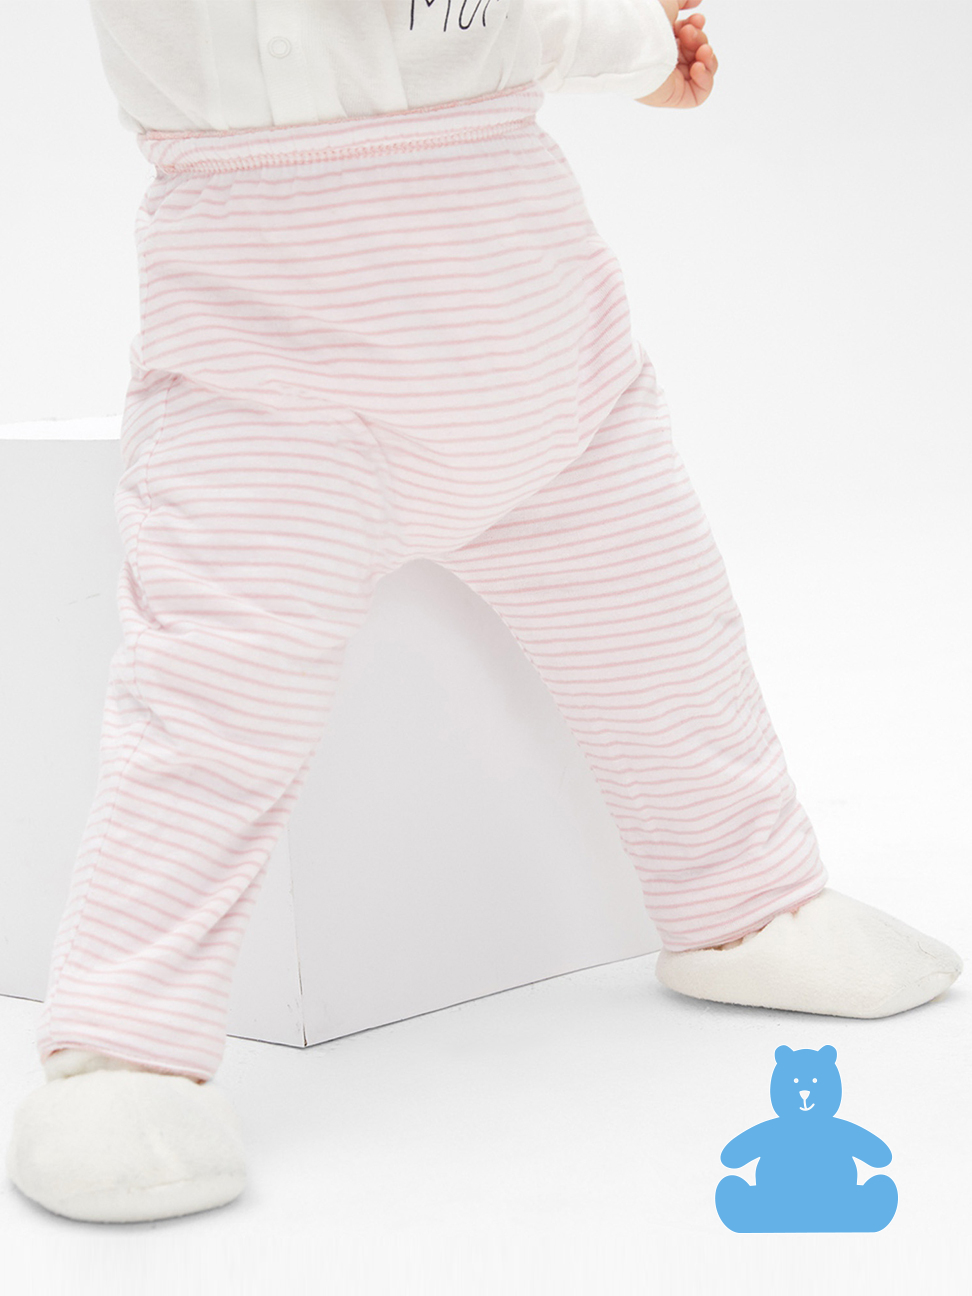 嬰兒裝|柔軟舒適雙面穿鬆緊長褲 布萊納系列-俏皮粉色